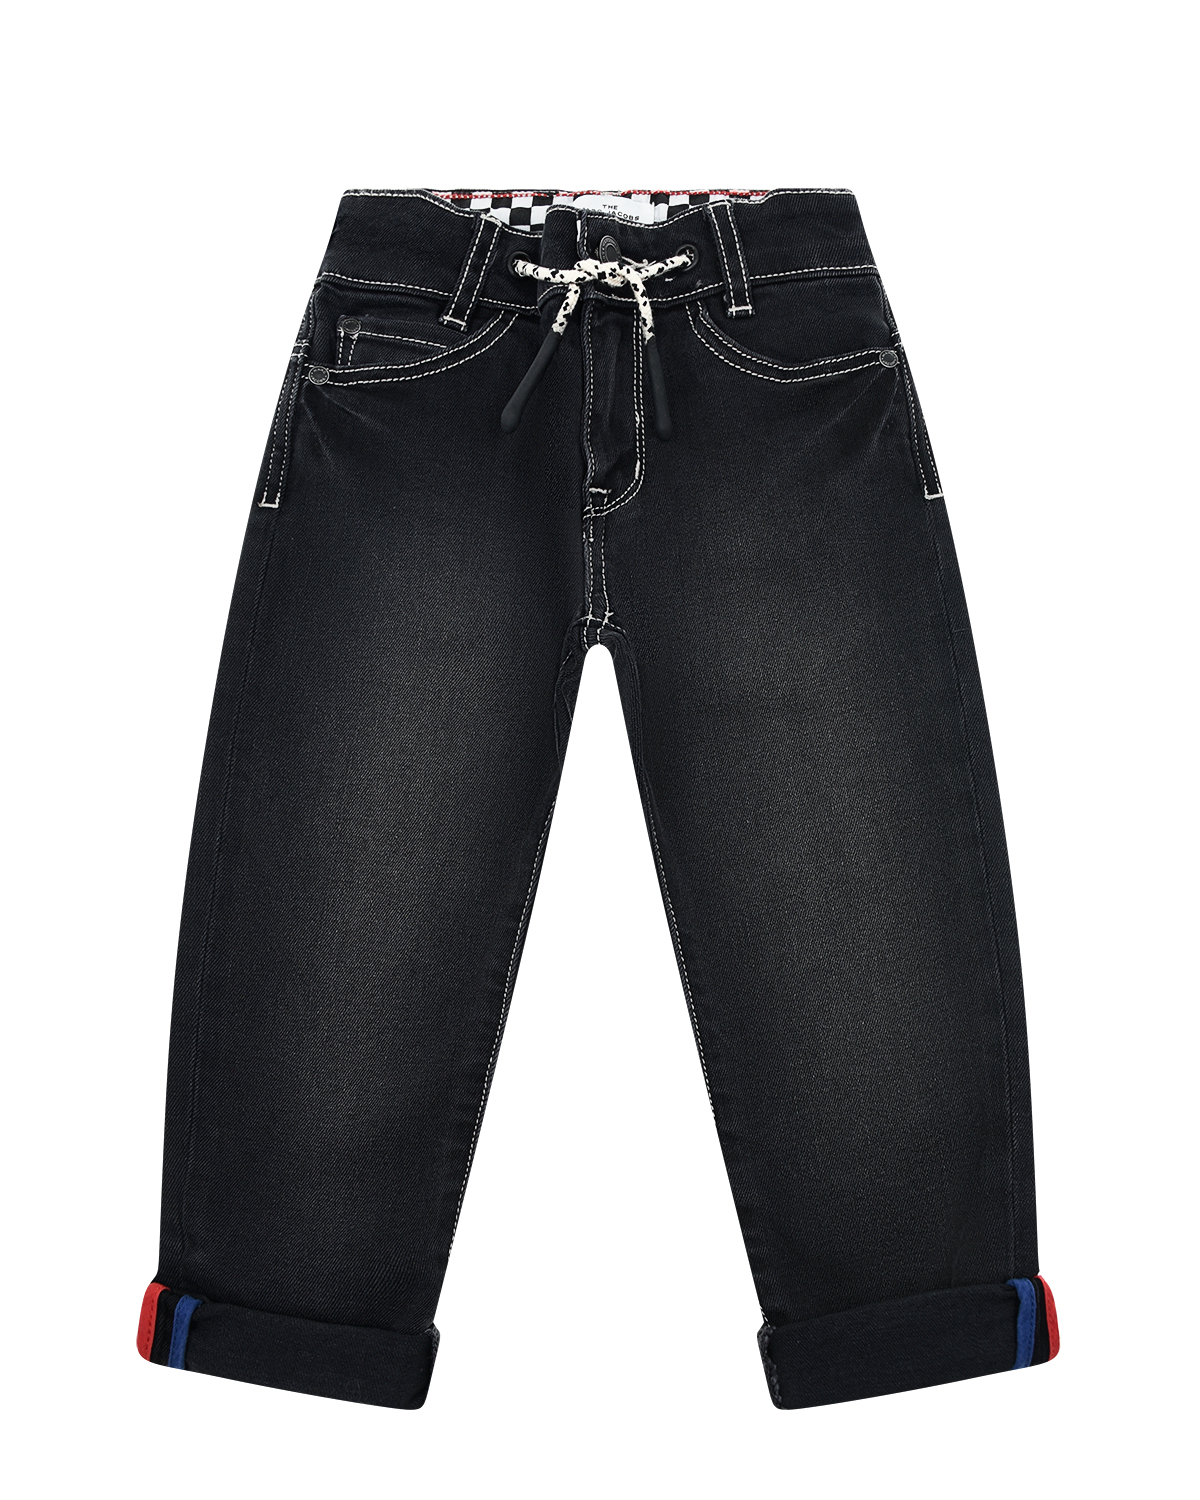 Джинсовые брюки с патчем "хот-дог" на заднем кармане Marc Jacobs (The) детские